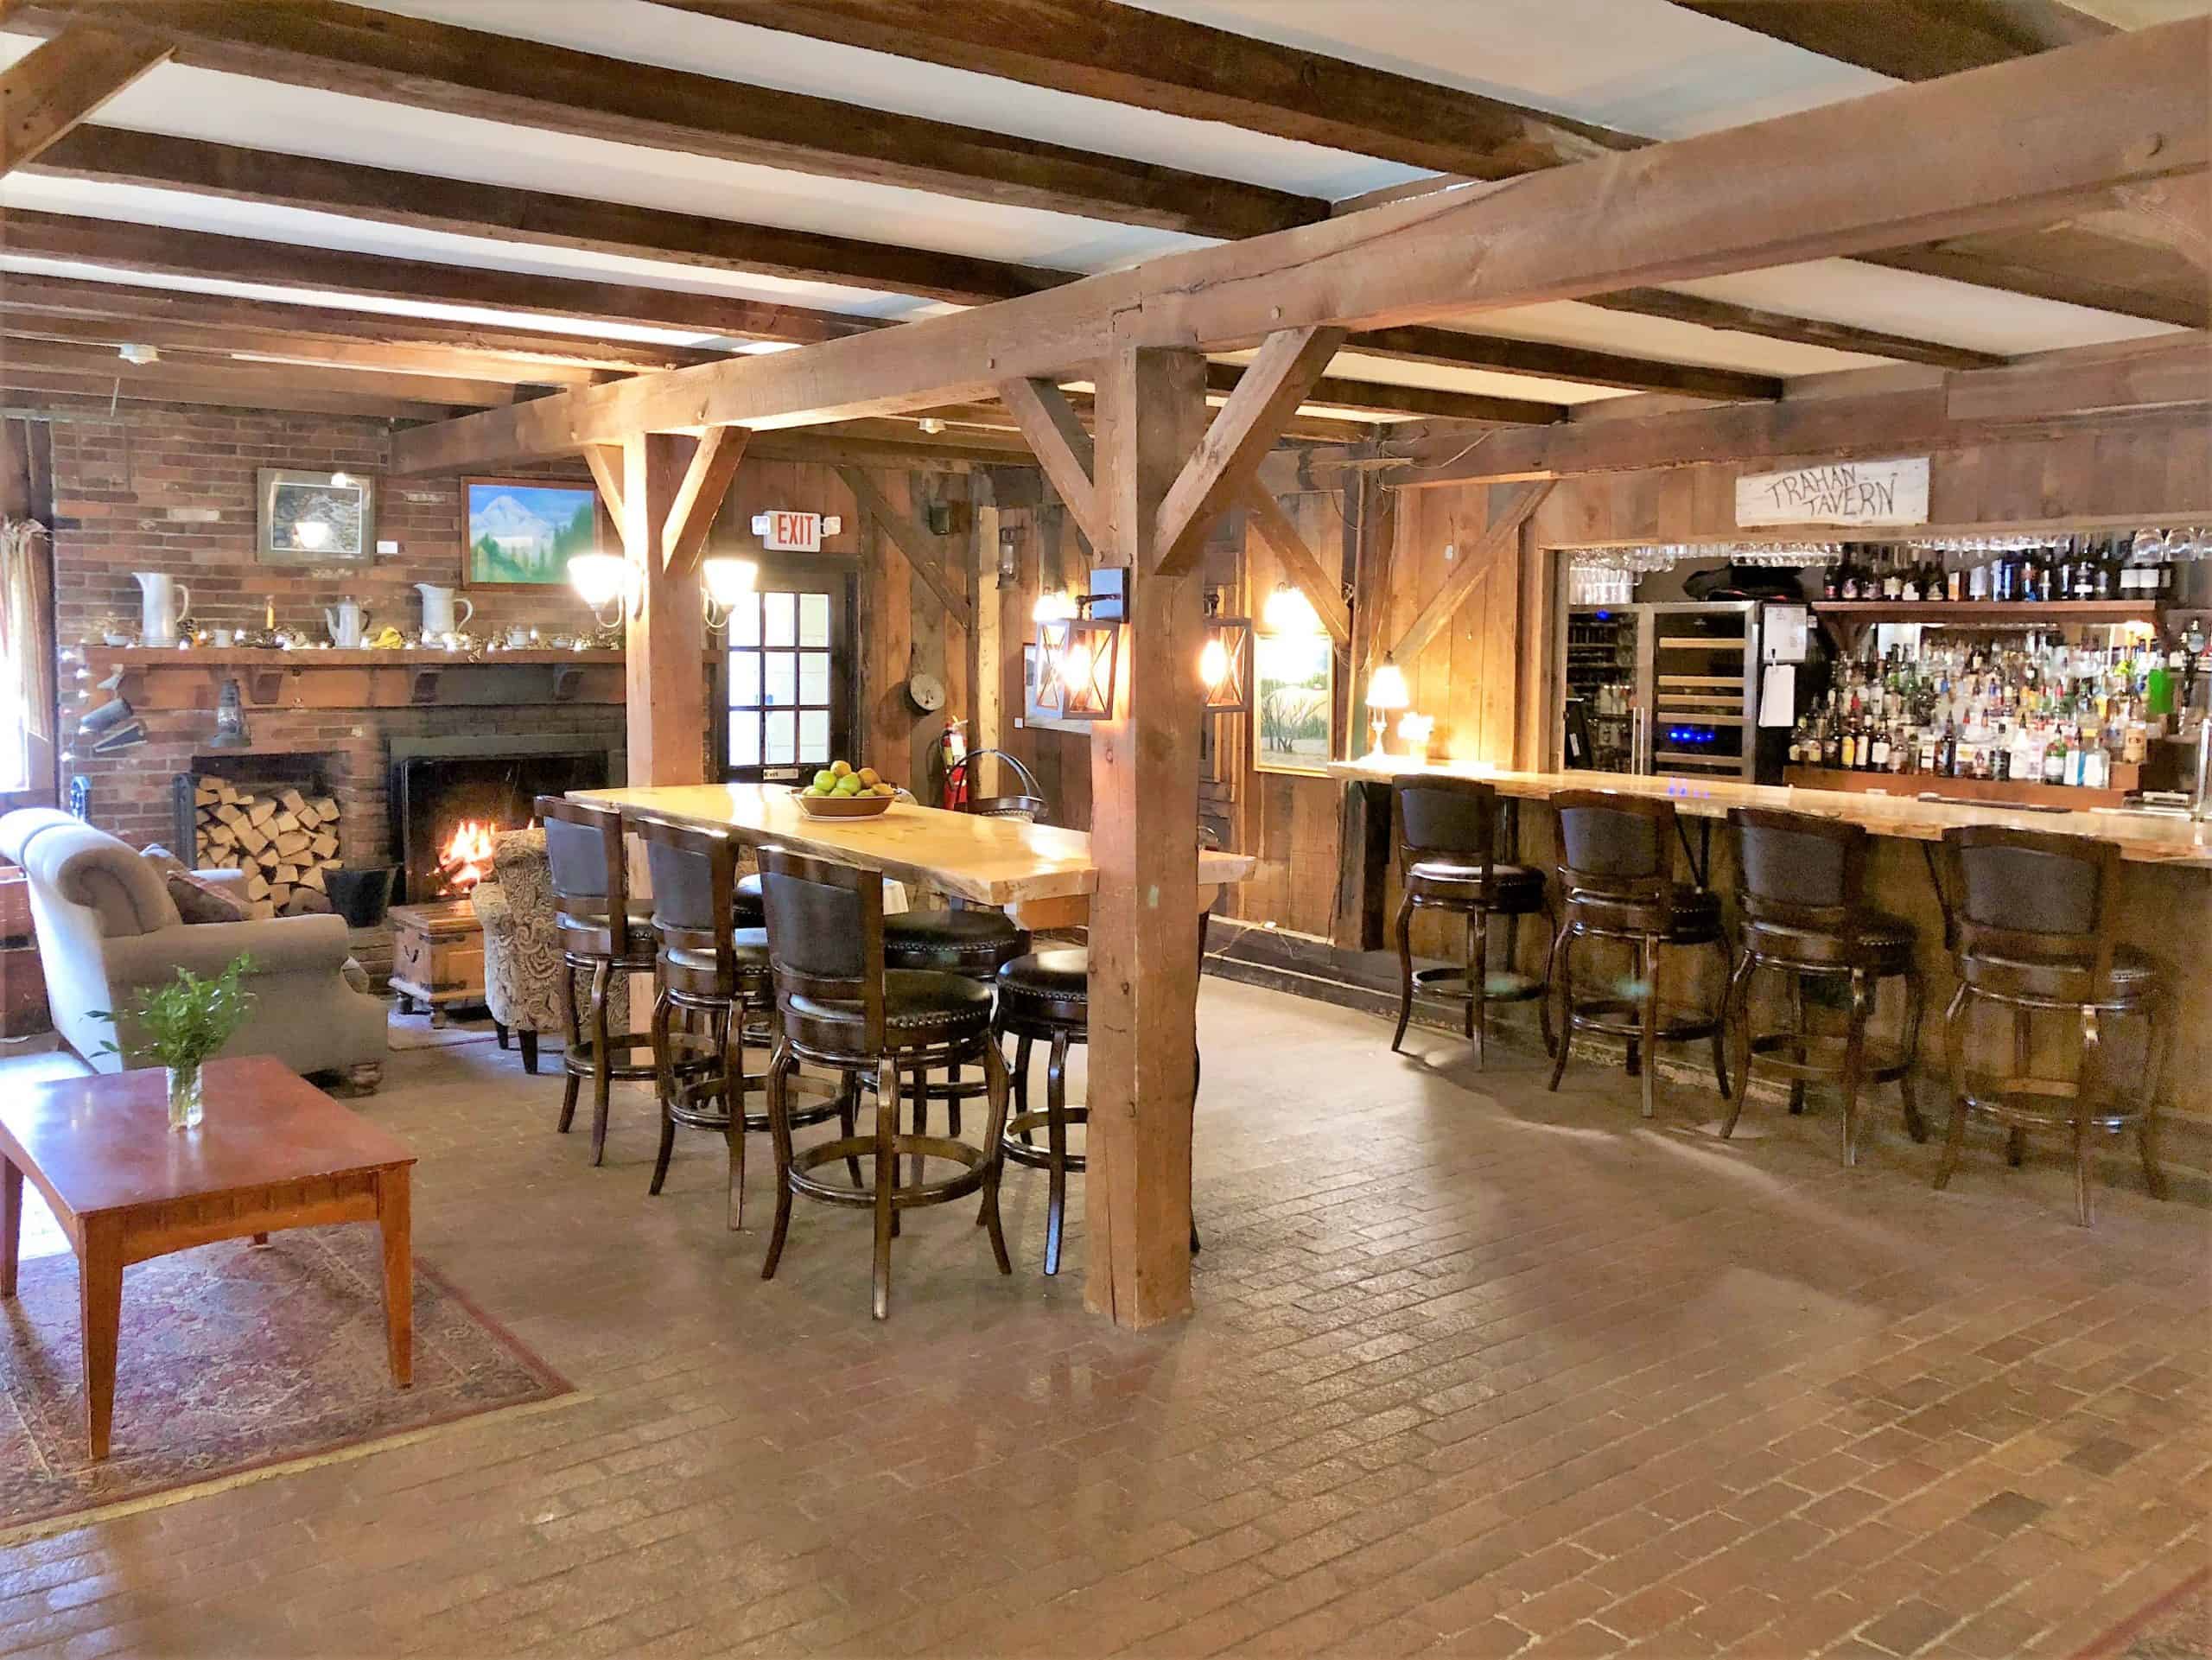 Quechee Inn at Marshland Farm - Common Room and Bar